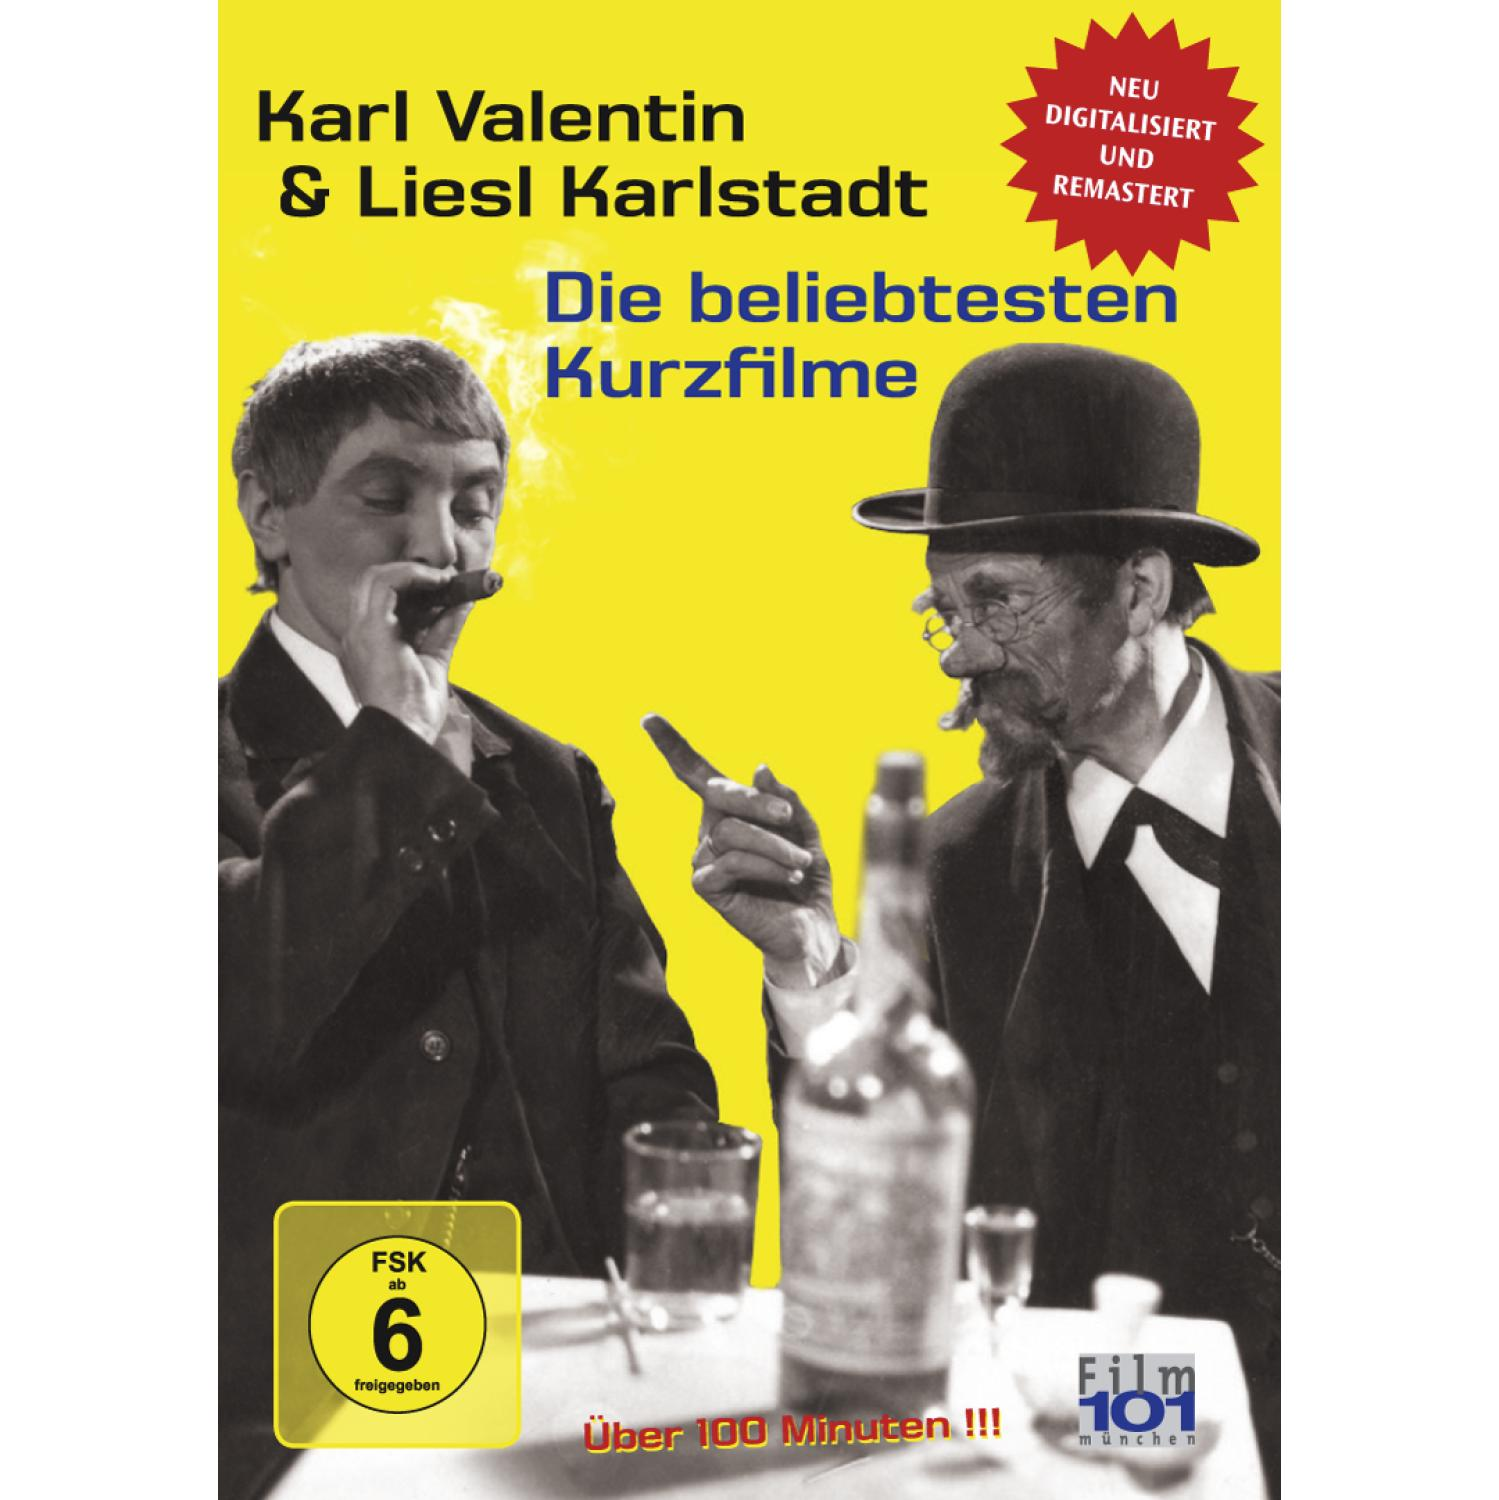 BELIEBTESTEN VALENTIN KARL DIE DVD - LIESL & KARLSTADT